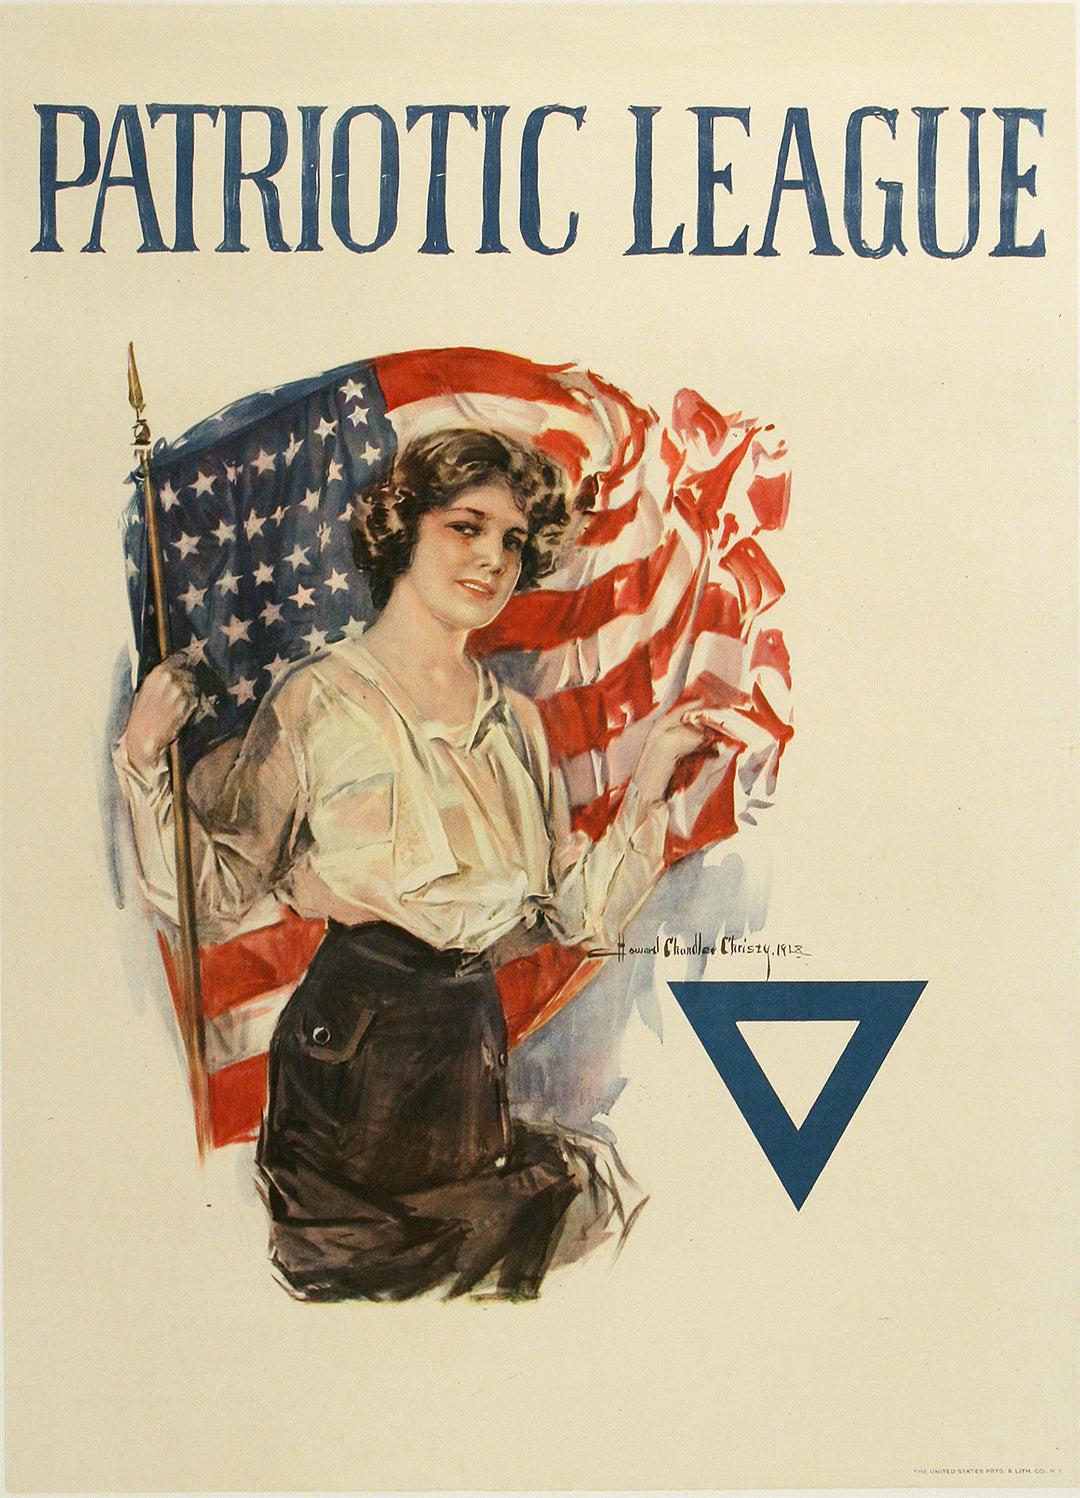 Original Vintage WWI Poster Patriotic League by Christy c1917